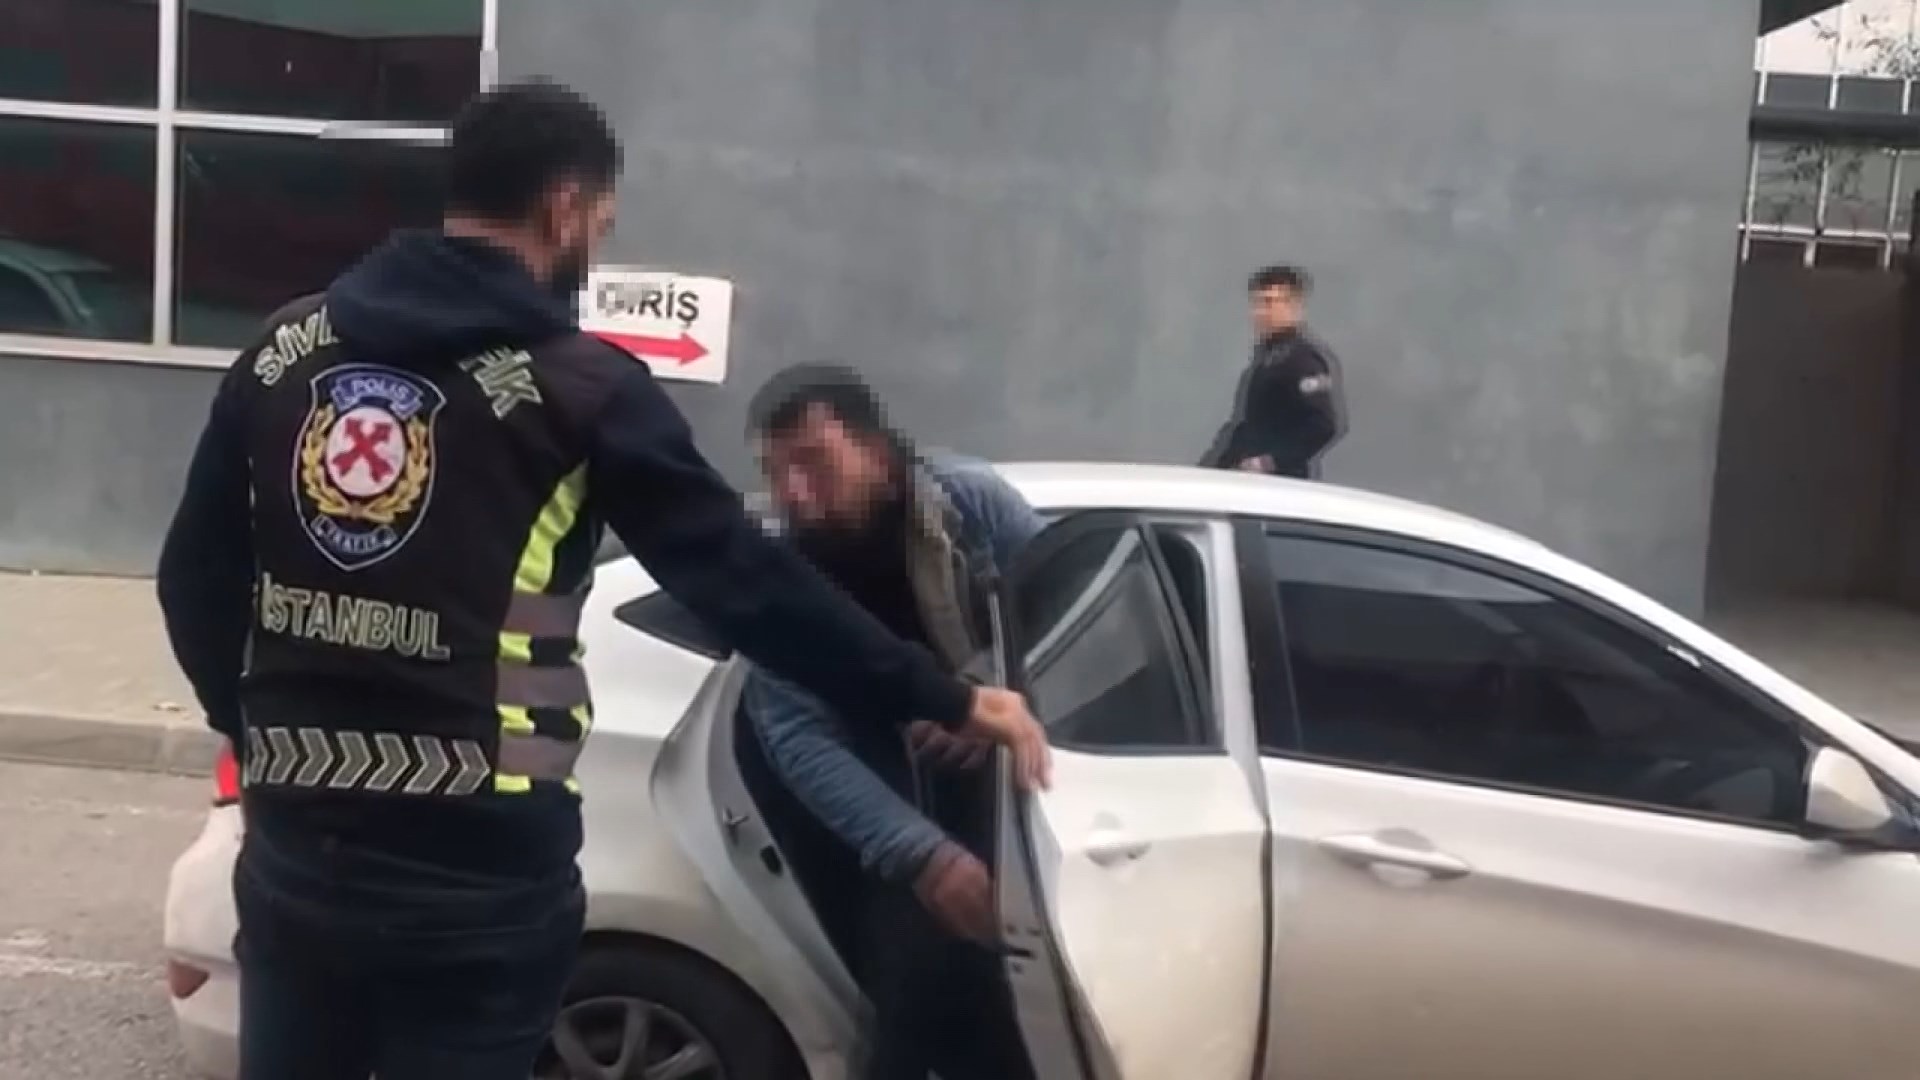 Kadıköy ilçesinde trafik magandası olarak tabir edilen sürücülere yönelik cezai işlemler uygulanmaktadır.